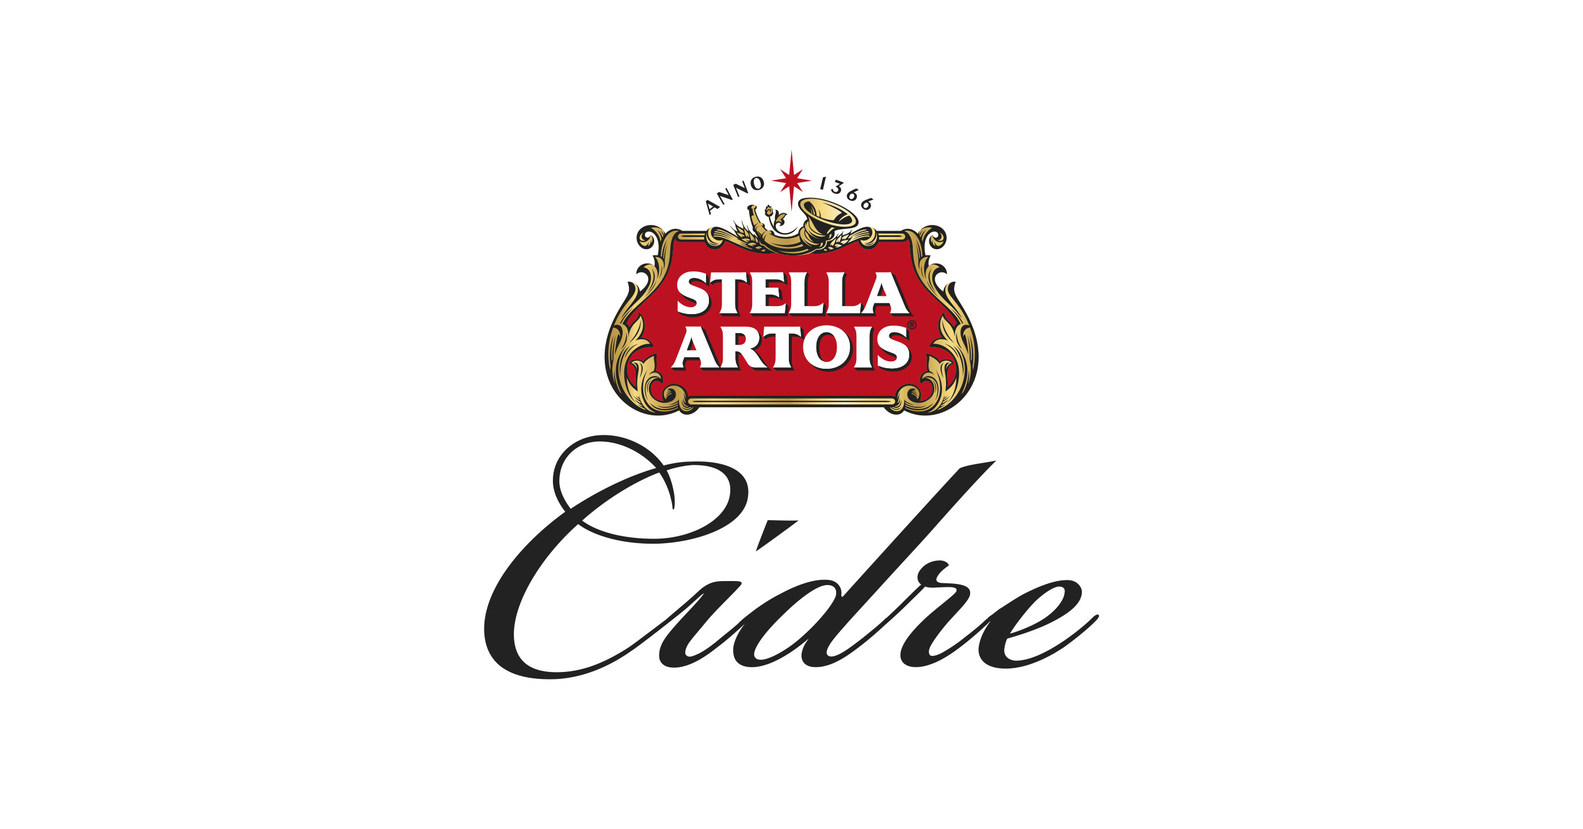 Stella Artois Cidre Says photo